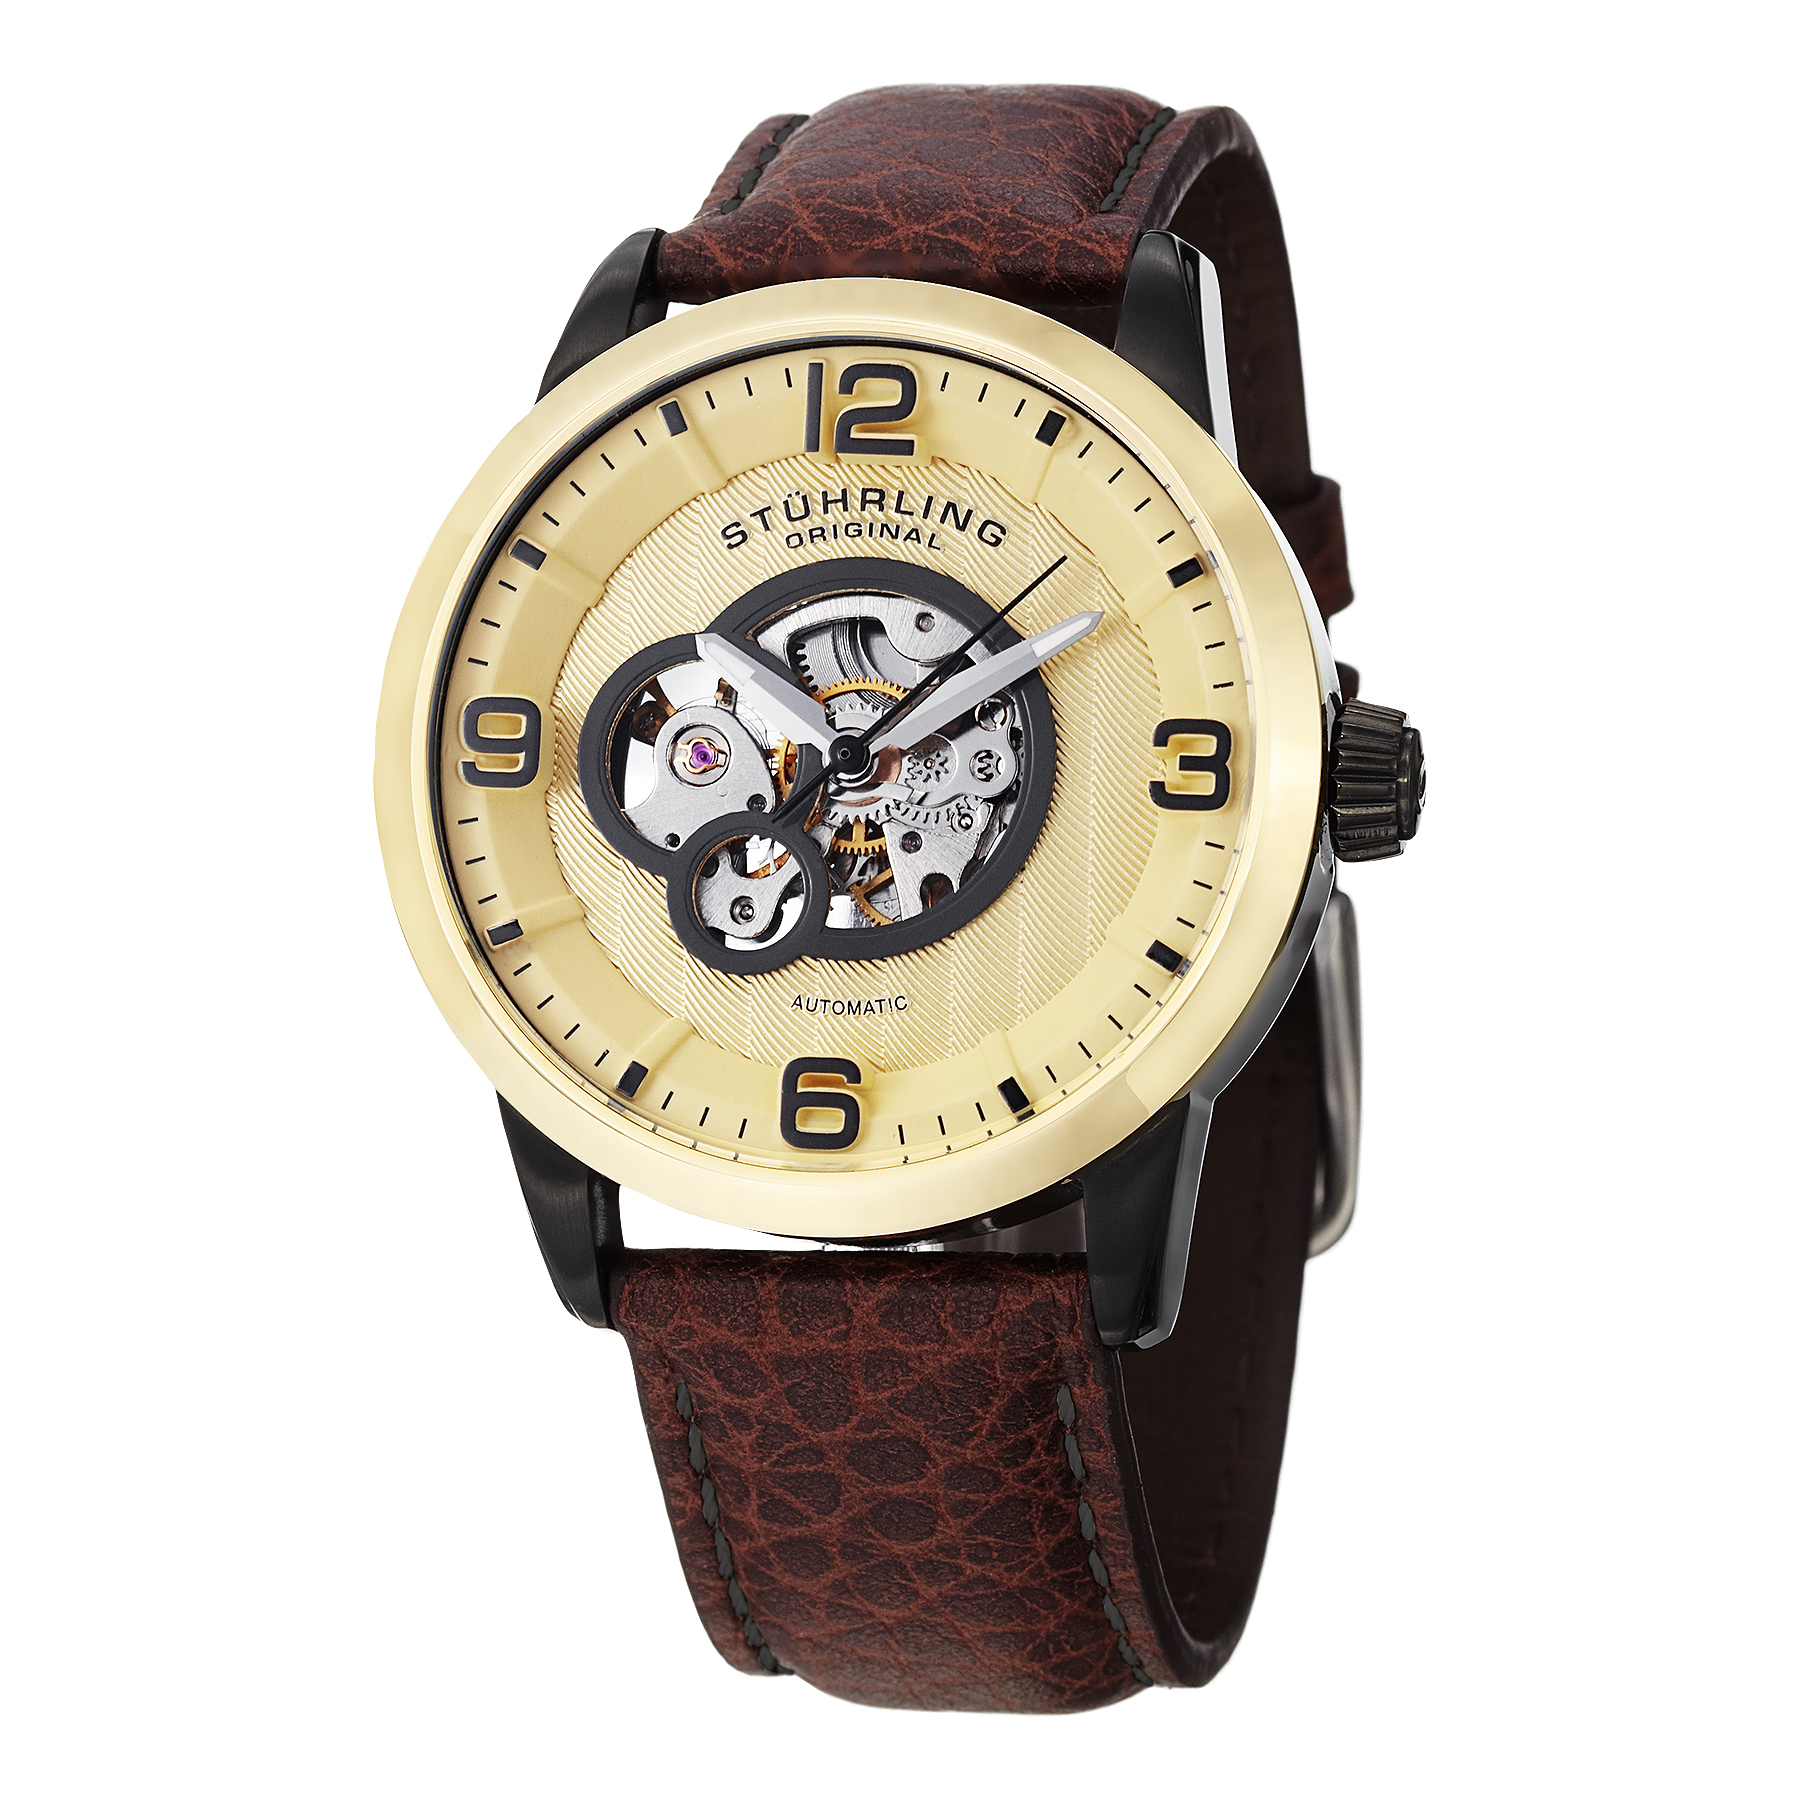 Stuhrling Legacy Men's Watch Model 648.03